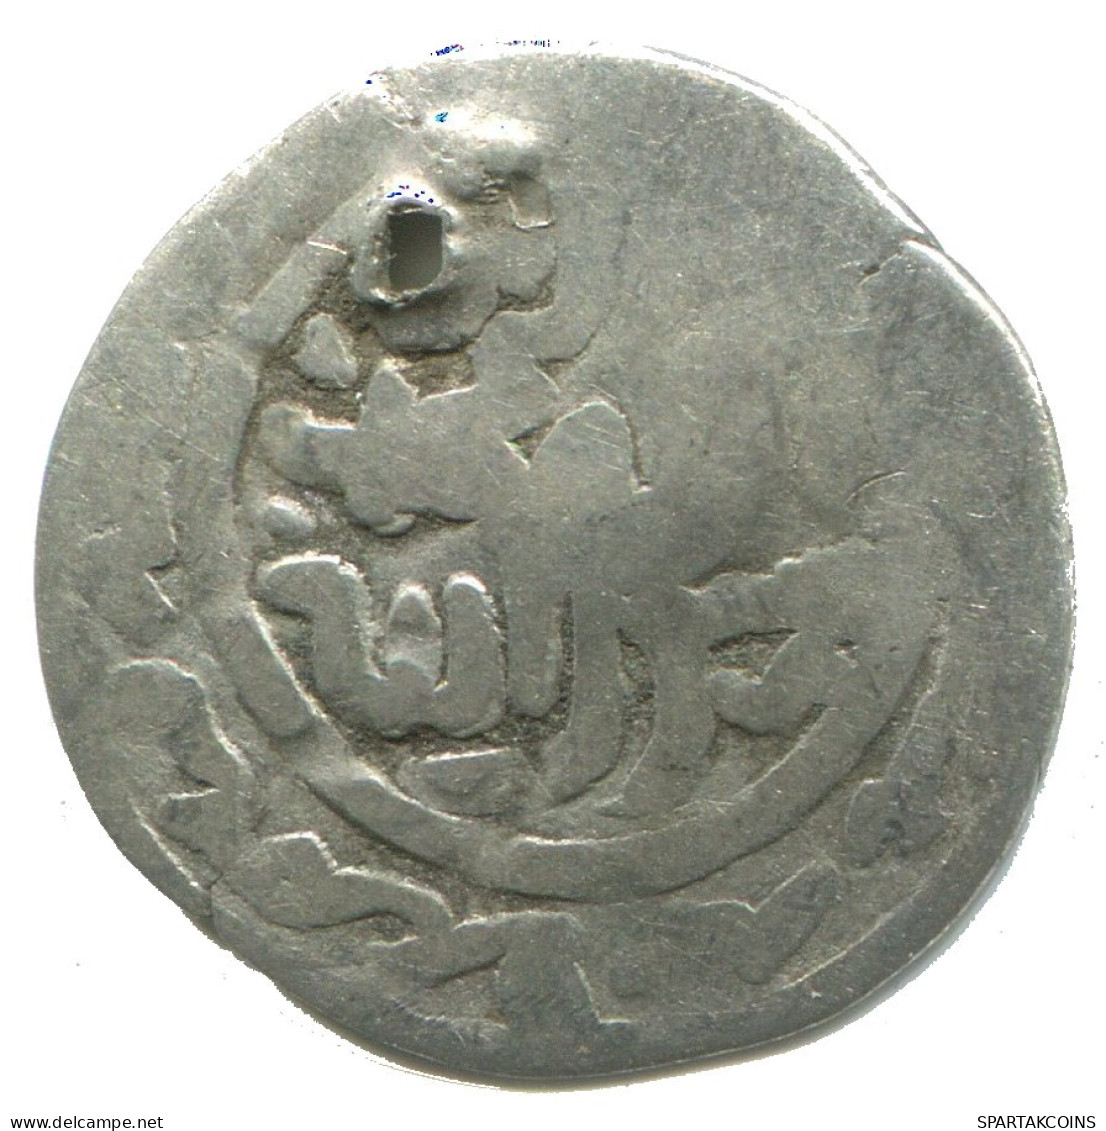 GOLDEN HORDE Silver Dirham Medieval Islamic Coin 1.1g/18mm #NNN1986.8.D.A - Islamiques